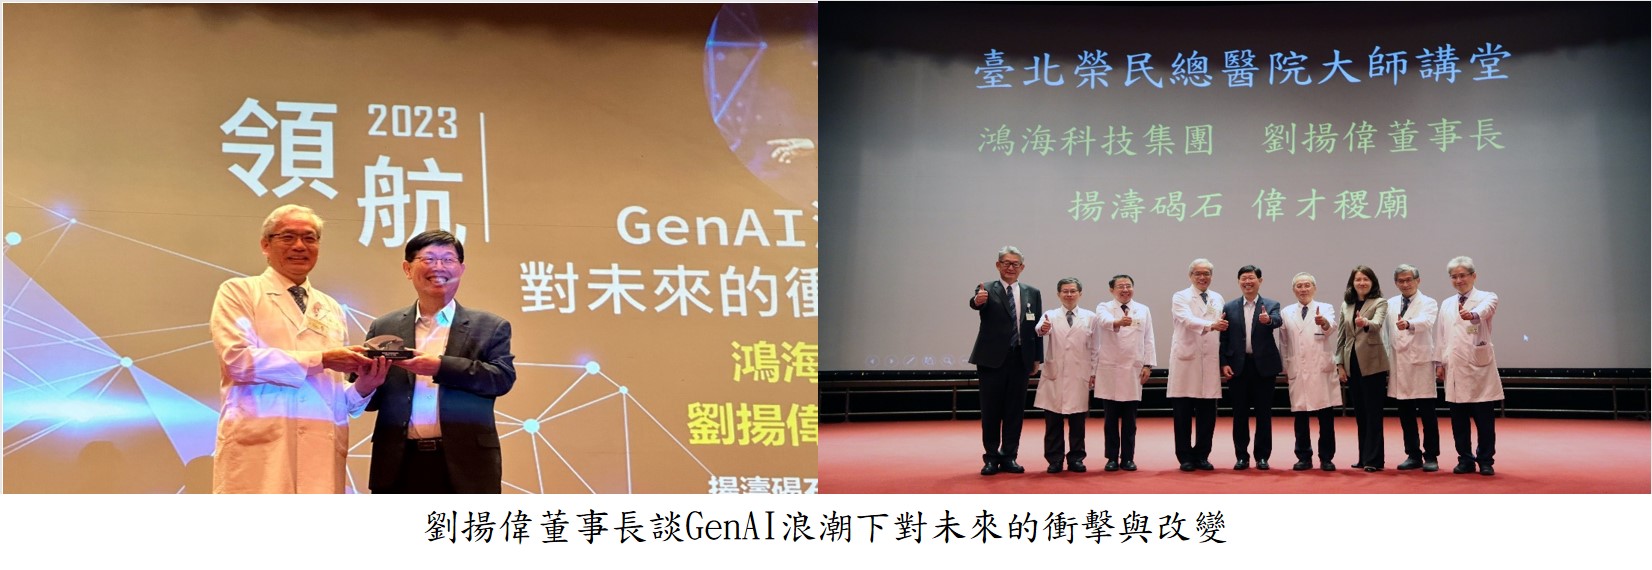 劉揚偉董事長談GenAI浪潮下對未來的衝擊與改變圖